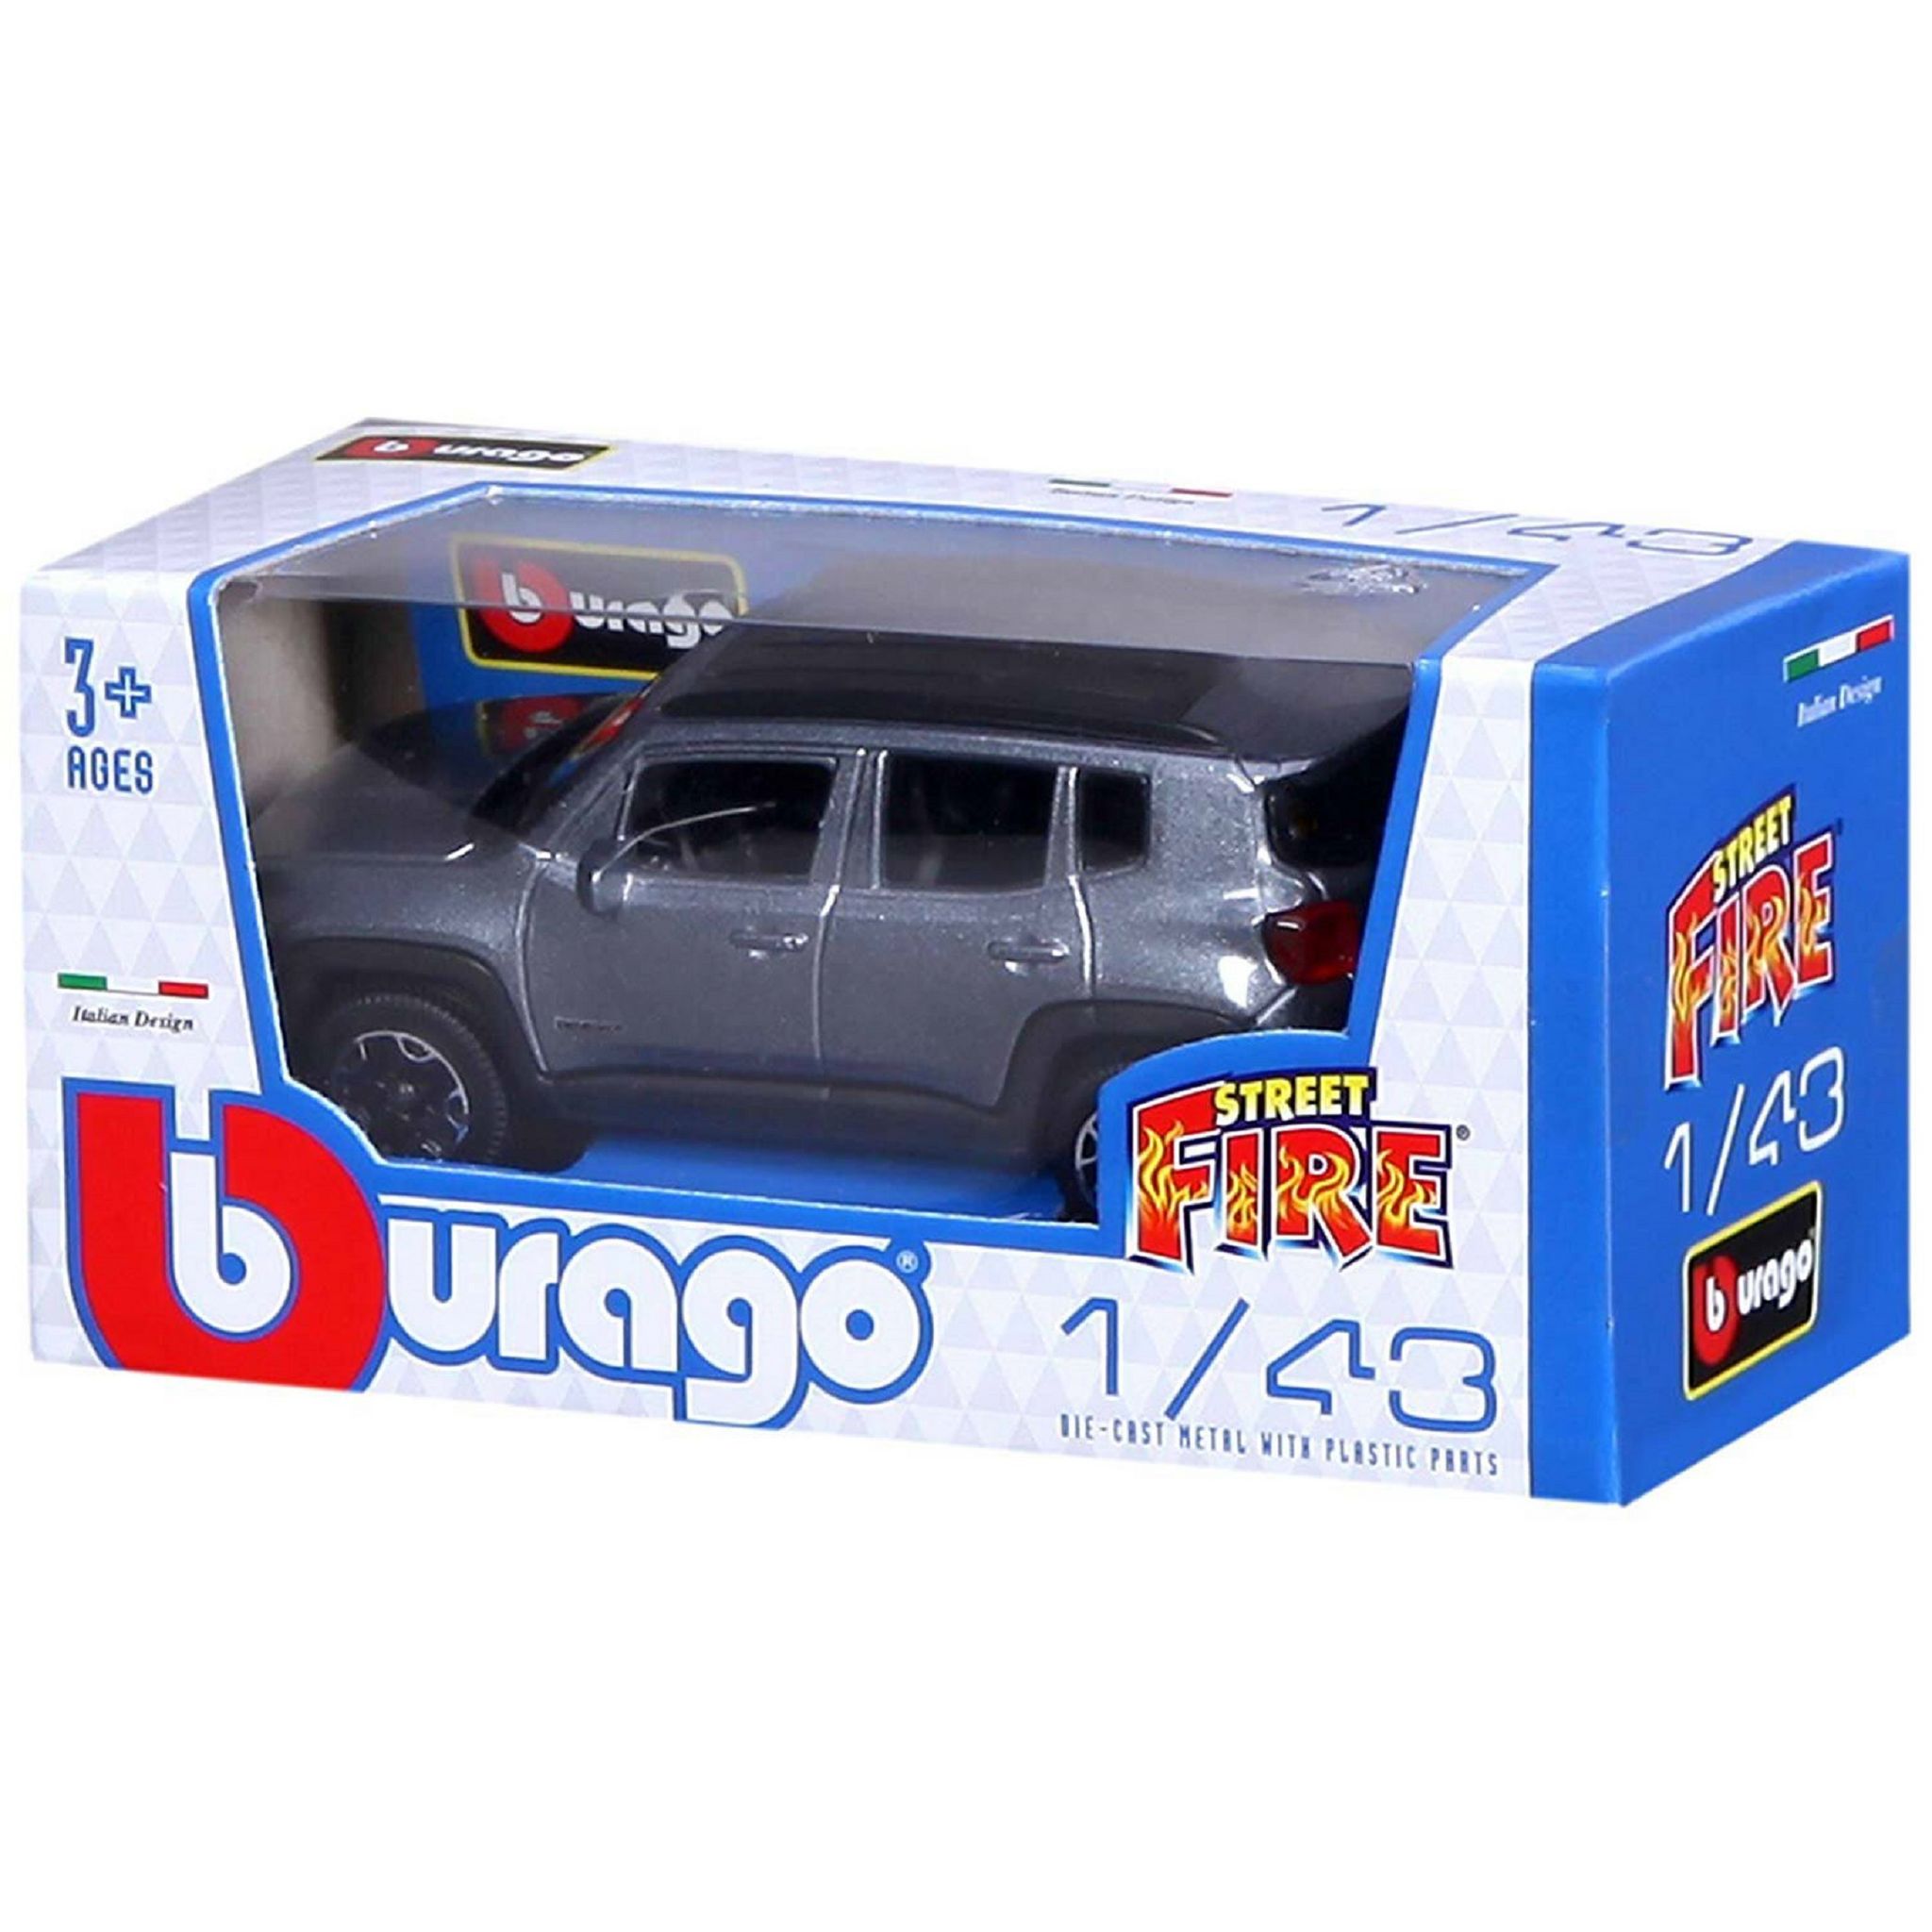 Burago - Camion Street Fire 1/43 - Modèle Aléatoire